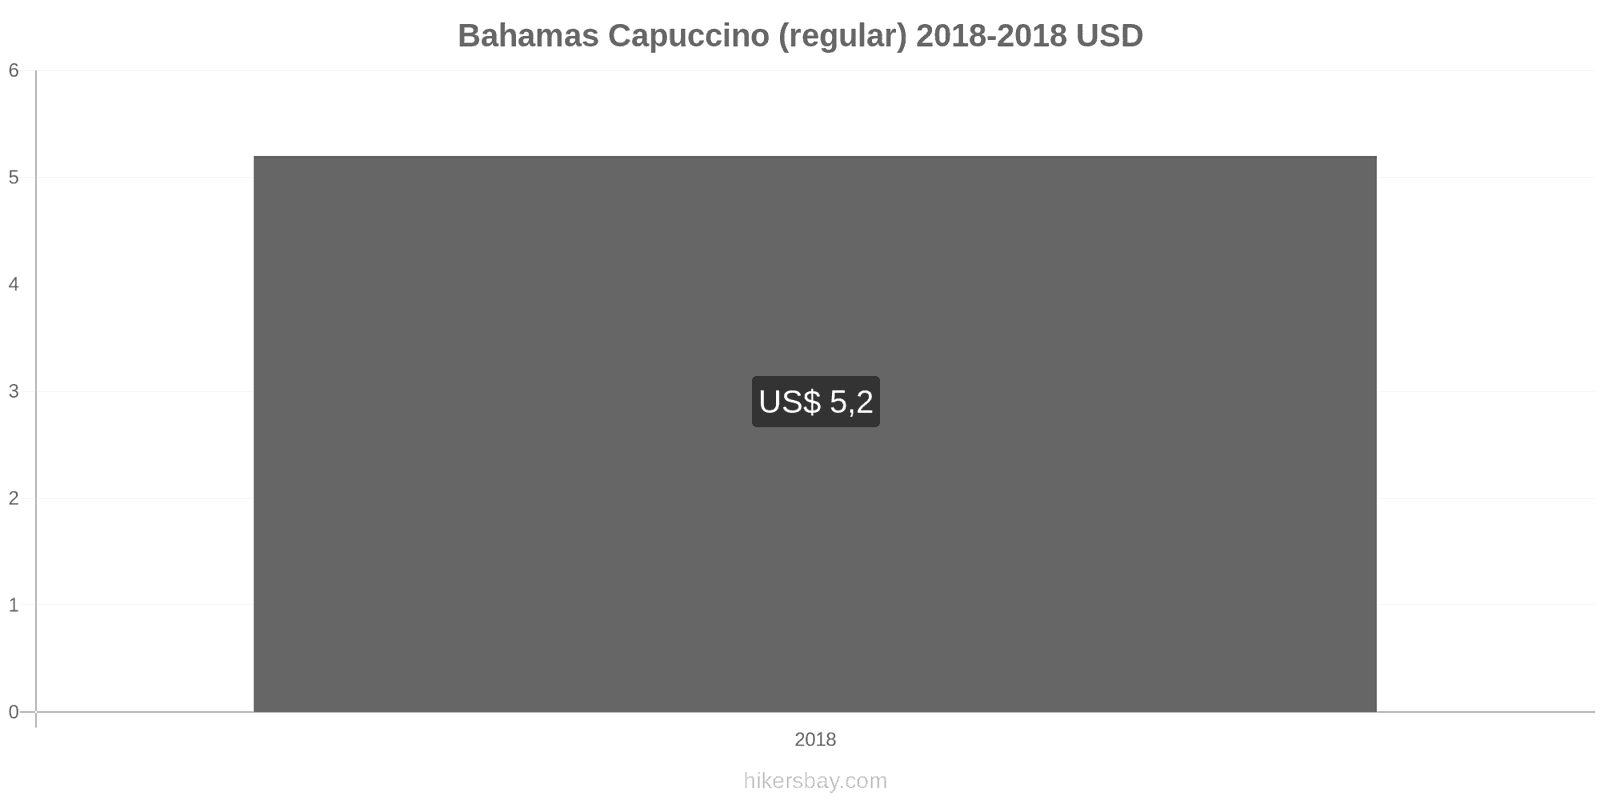 Bahamas mudanças de preços Cappuccino hikersbay.com